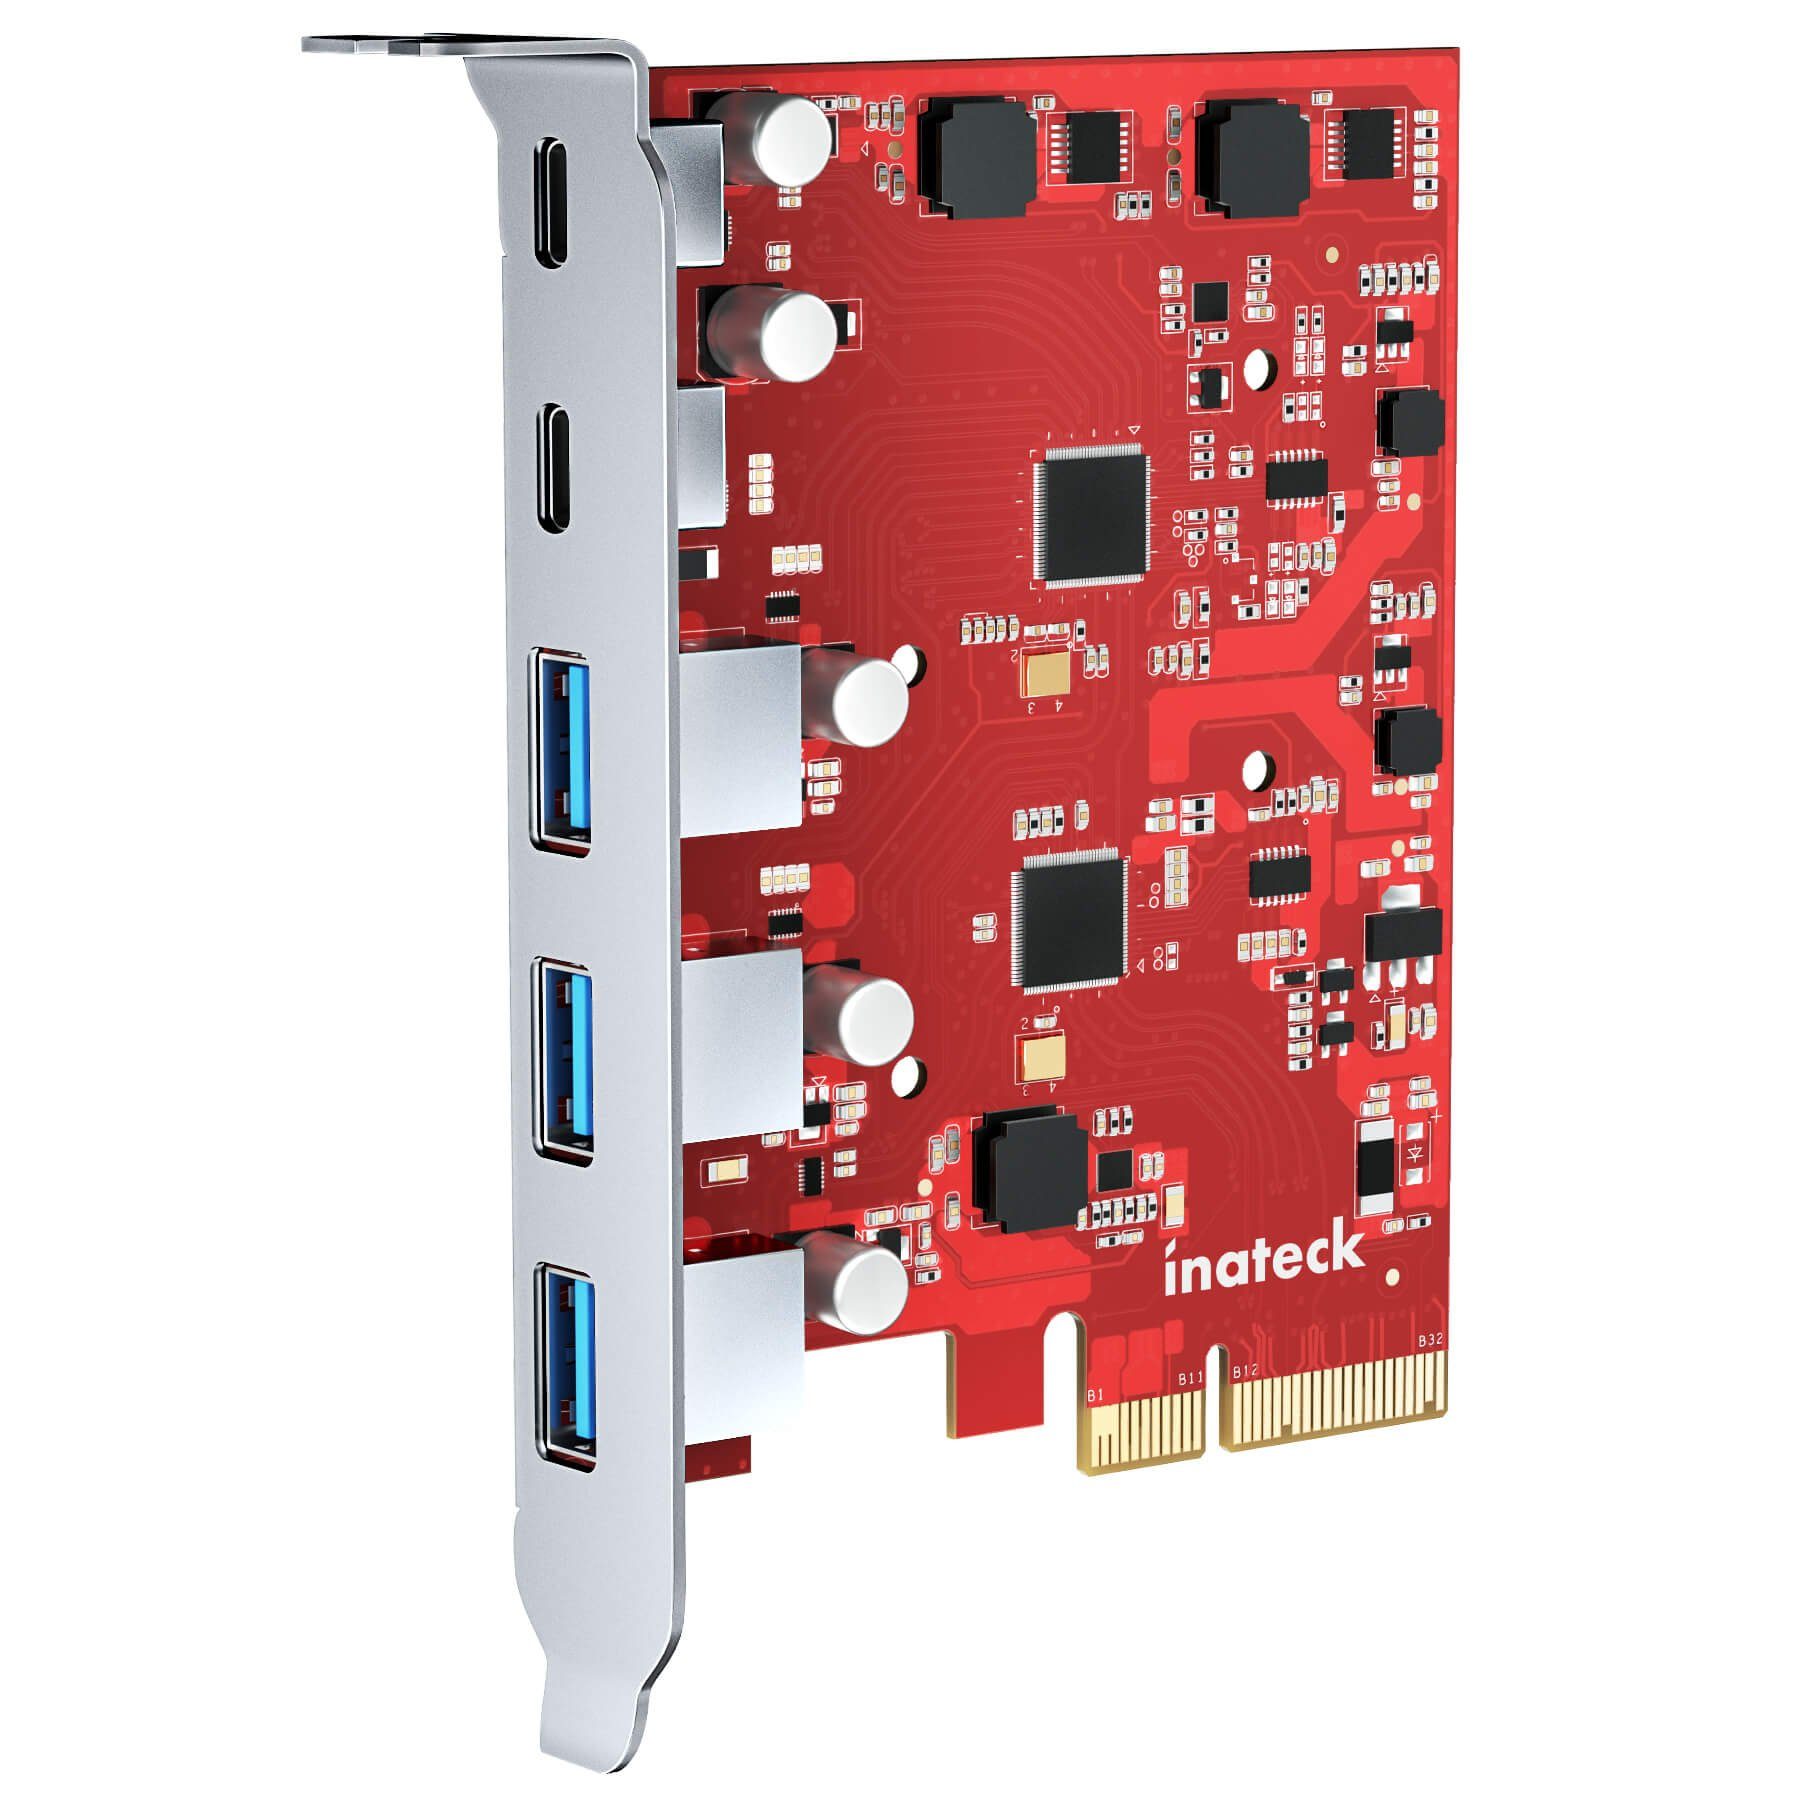 Inateck »PCIe zu USB 3.2 Gen 2 Karte mit 20 Gbit/s Bandbreite, 3 USB Typ-A  und 2 USB Typ-C Anschlüsse« PC-Controller online kaufen | OTTO